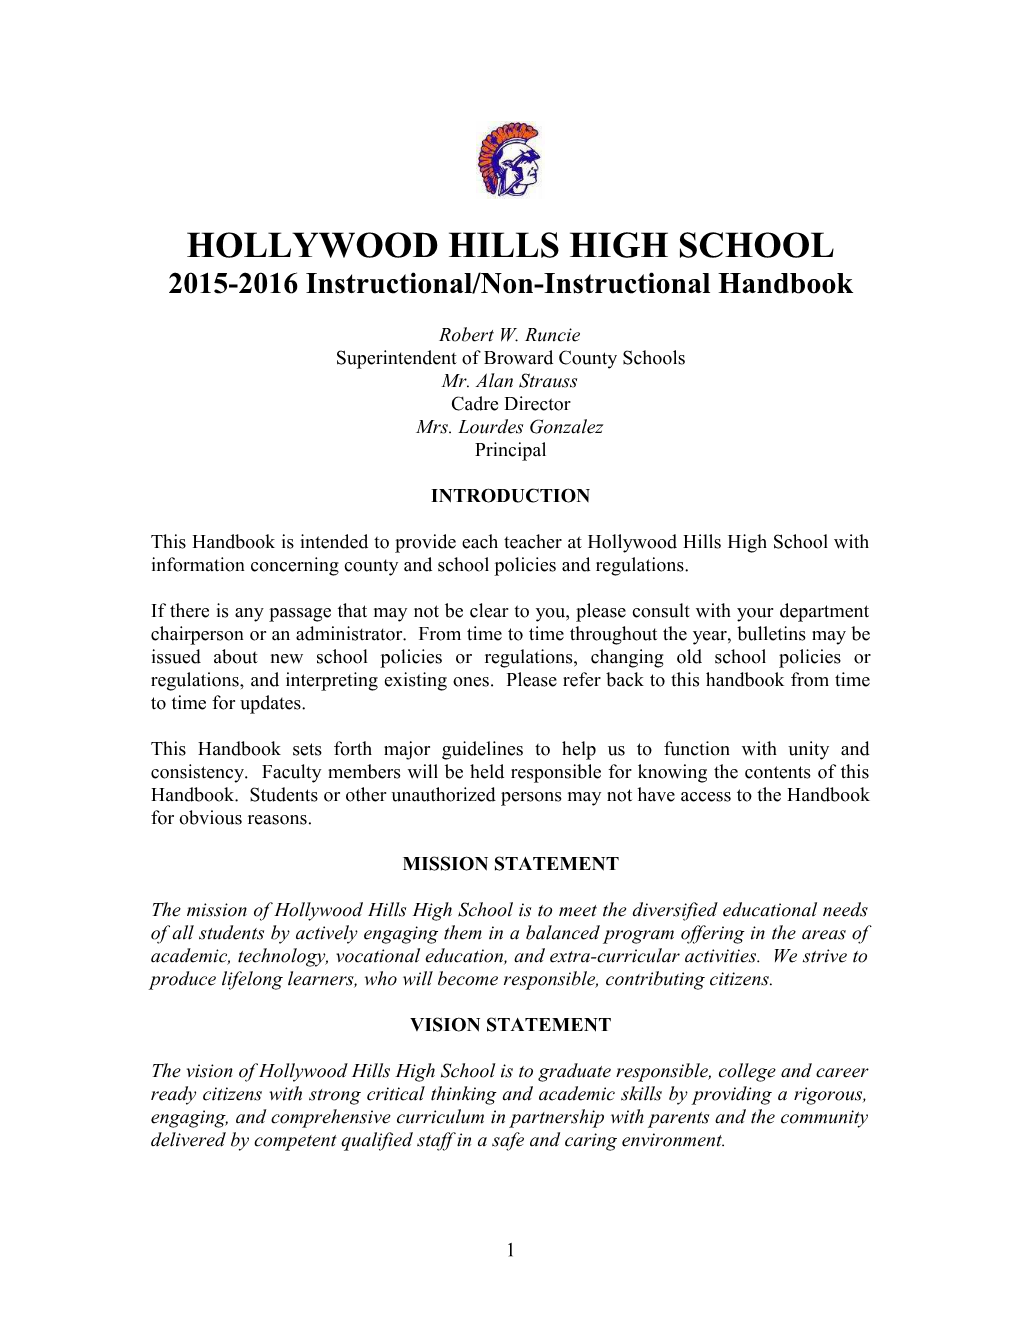 Hollywood Hills High School